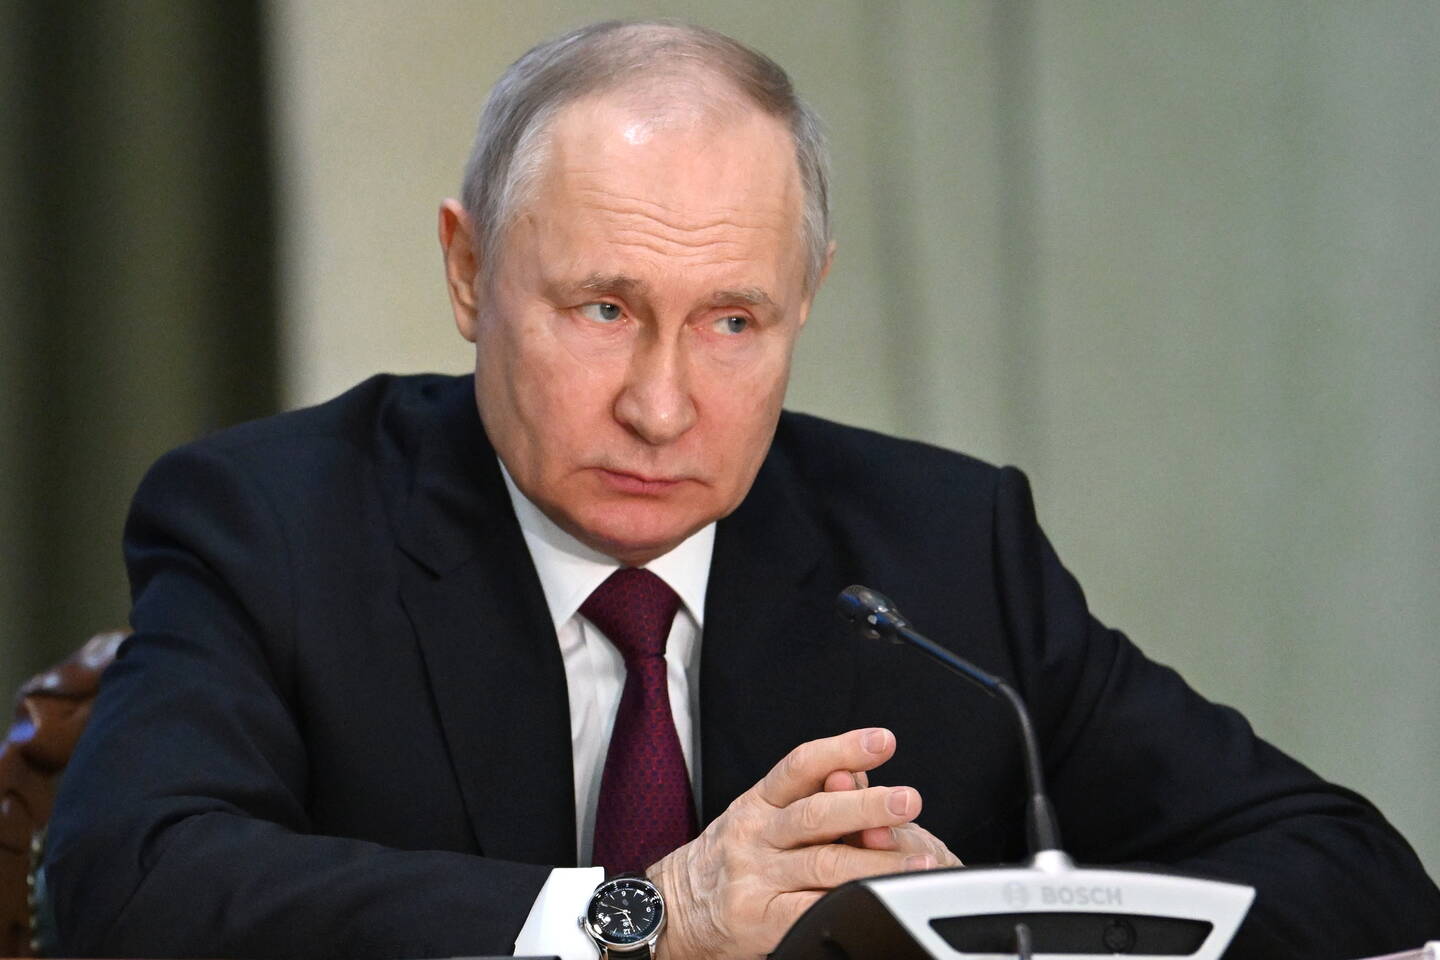 Mandat d'arrêt émis contre Poutine suite à des allégations de crimes de guerre